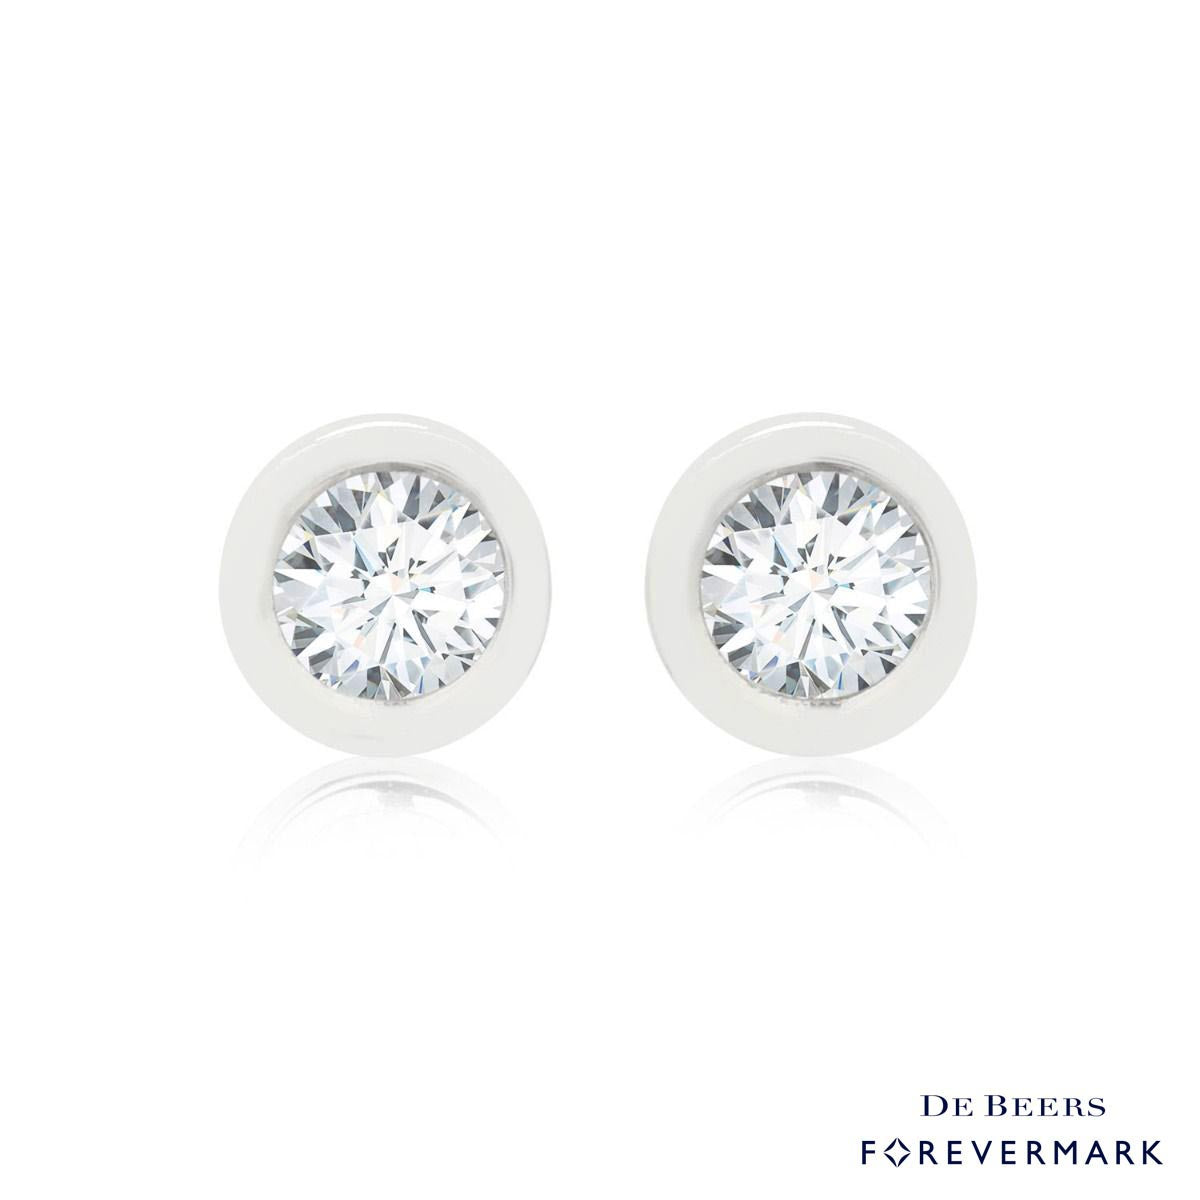 De Beers Forevermark Diamond Bezel Earrings in 18kt White Gold (1/4ct tw)